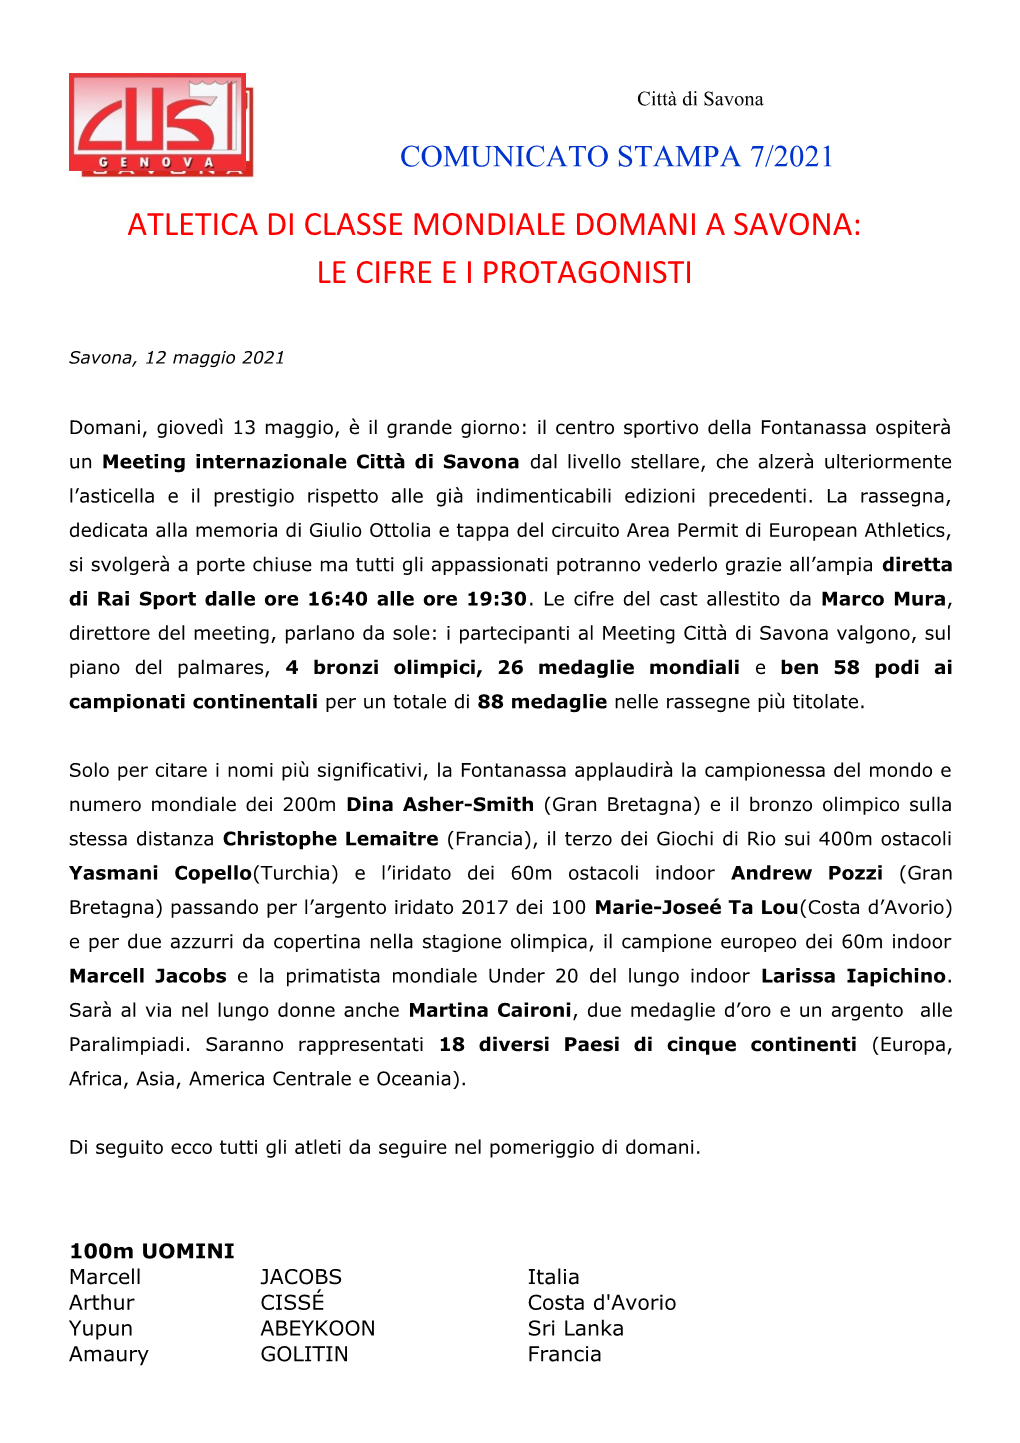 Atletica Di Classe Mondiale Domani a Savona: Le Cifre E I Protagonisti